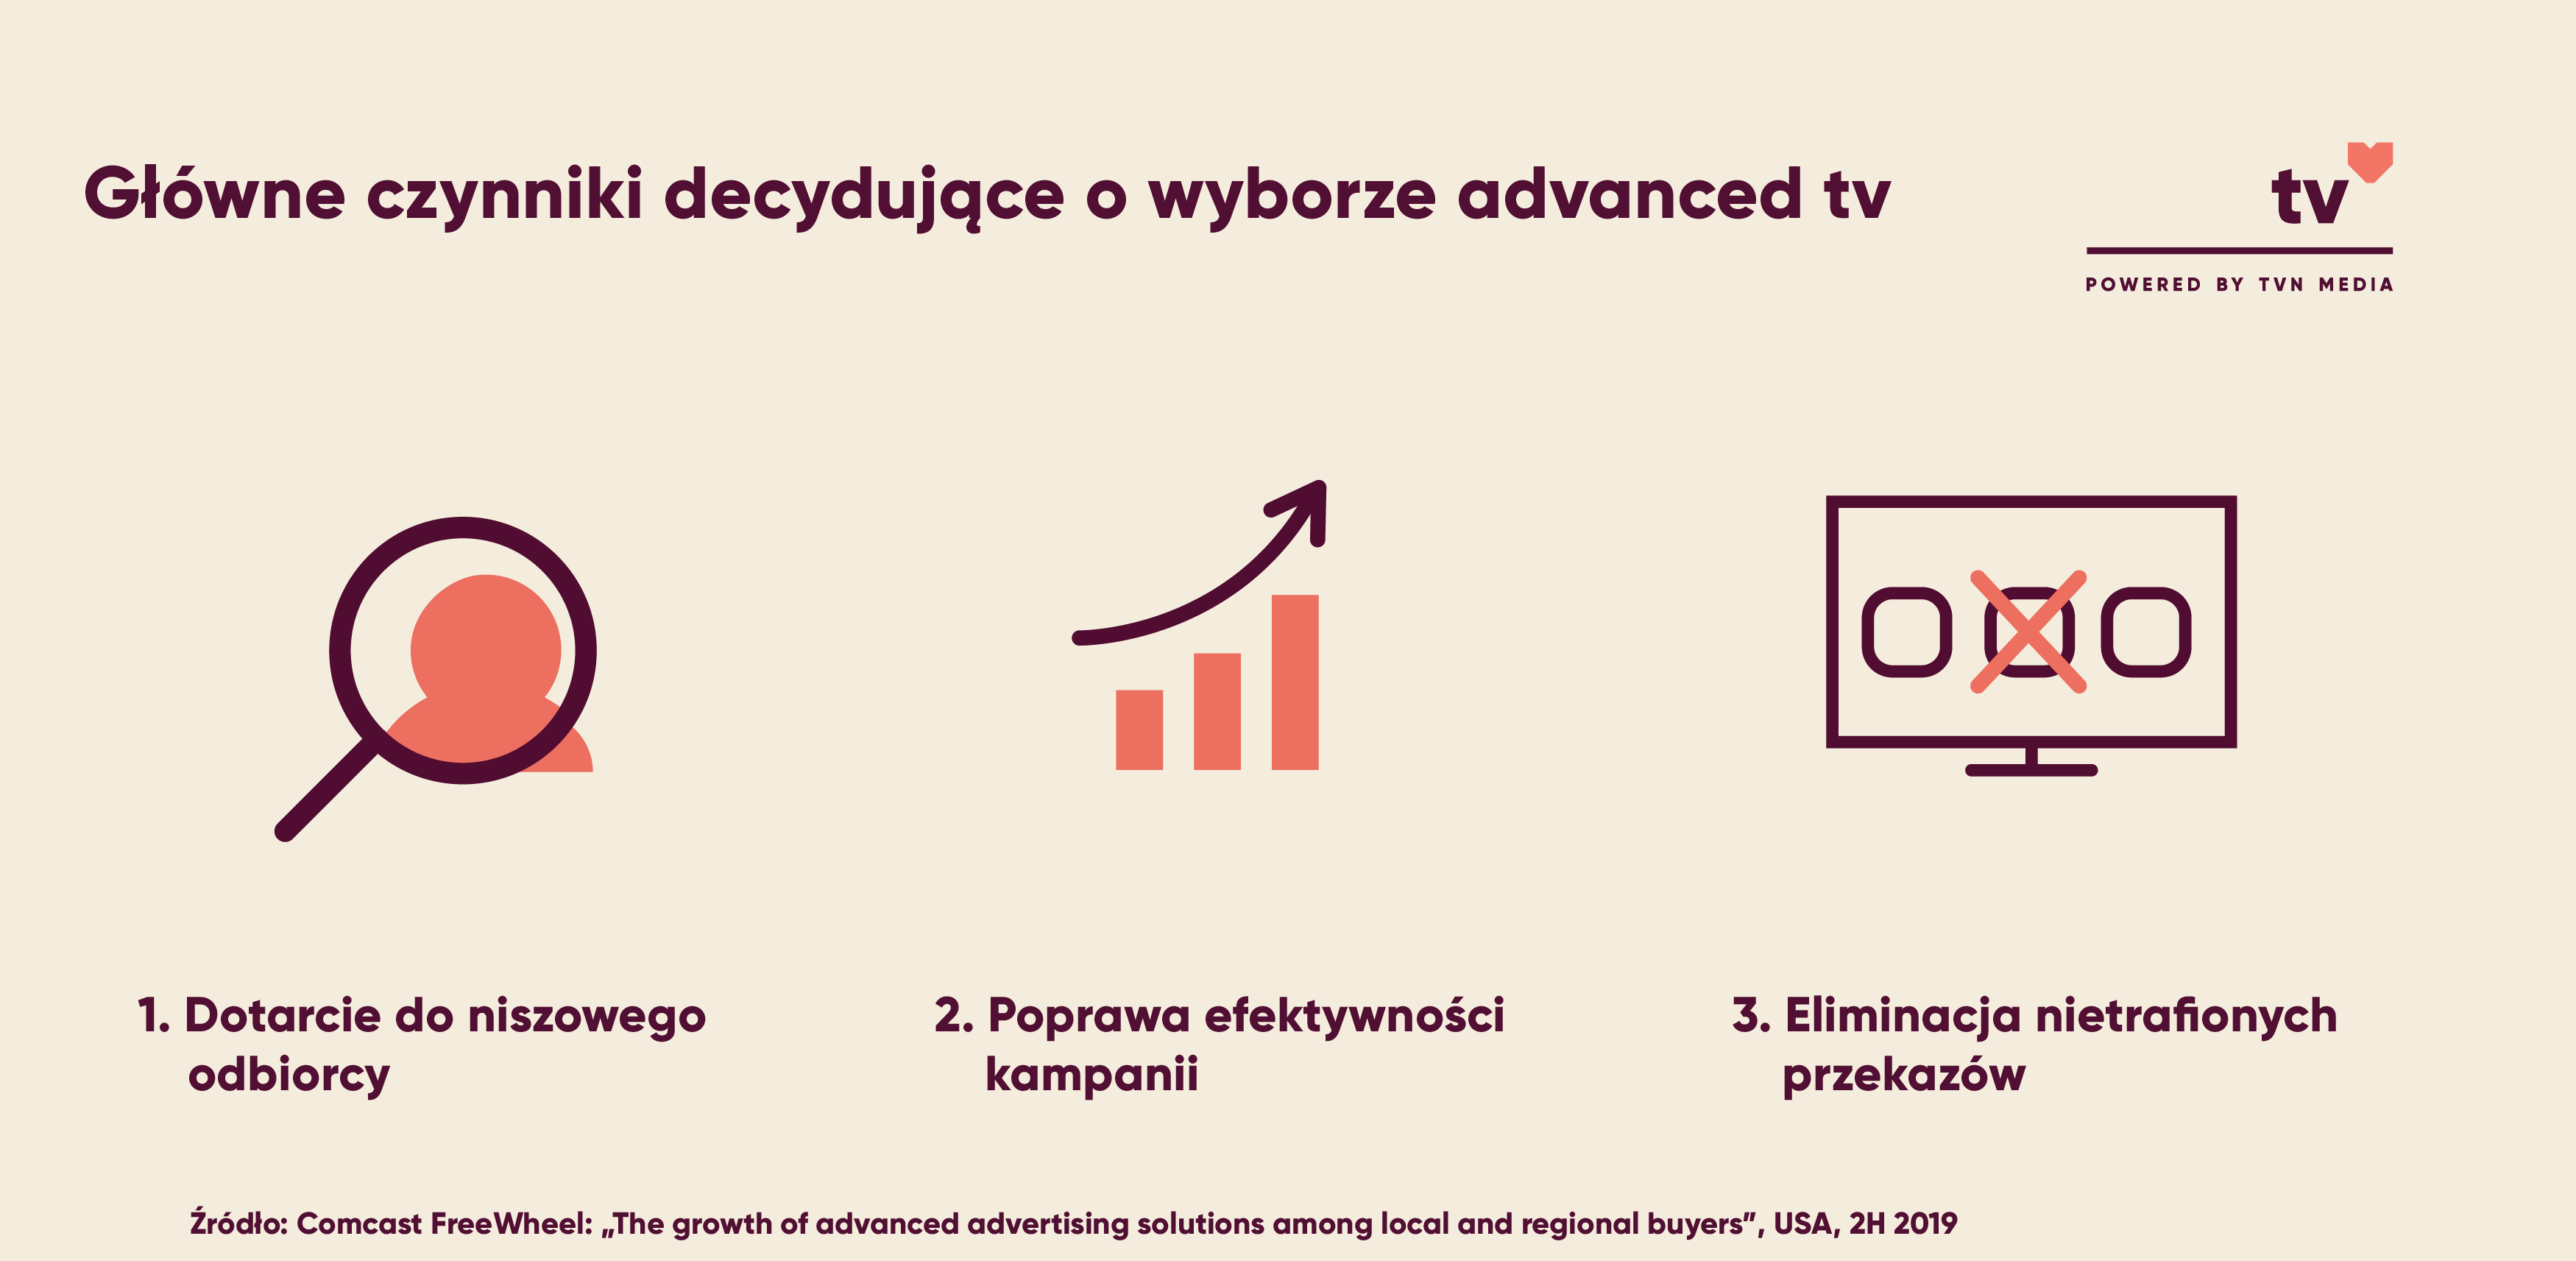 Główne czynniki decydujące o wyborze advanced tv